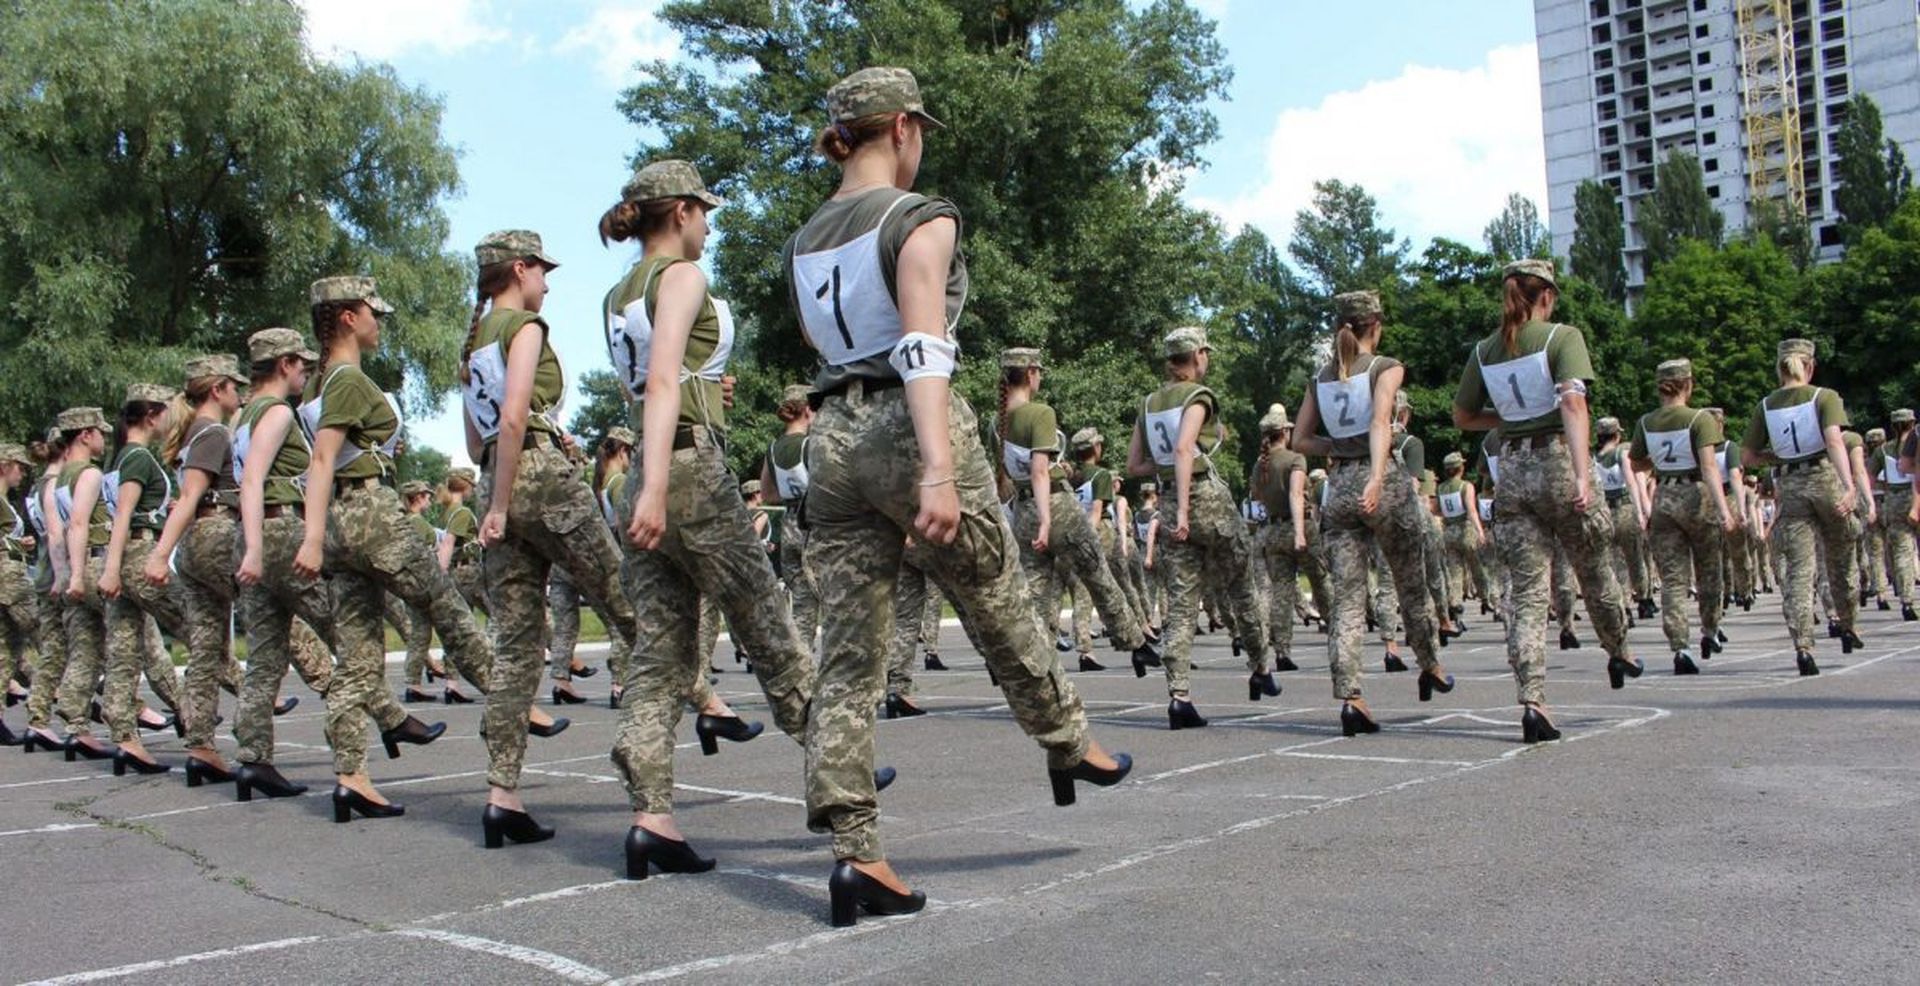 烏克蘭女兵穿高跟鞋練正步 男國防部長被送高跟鞋抗議